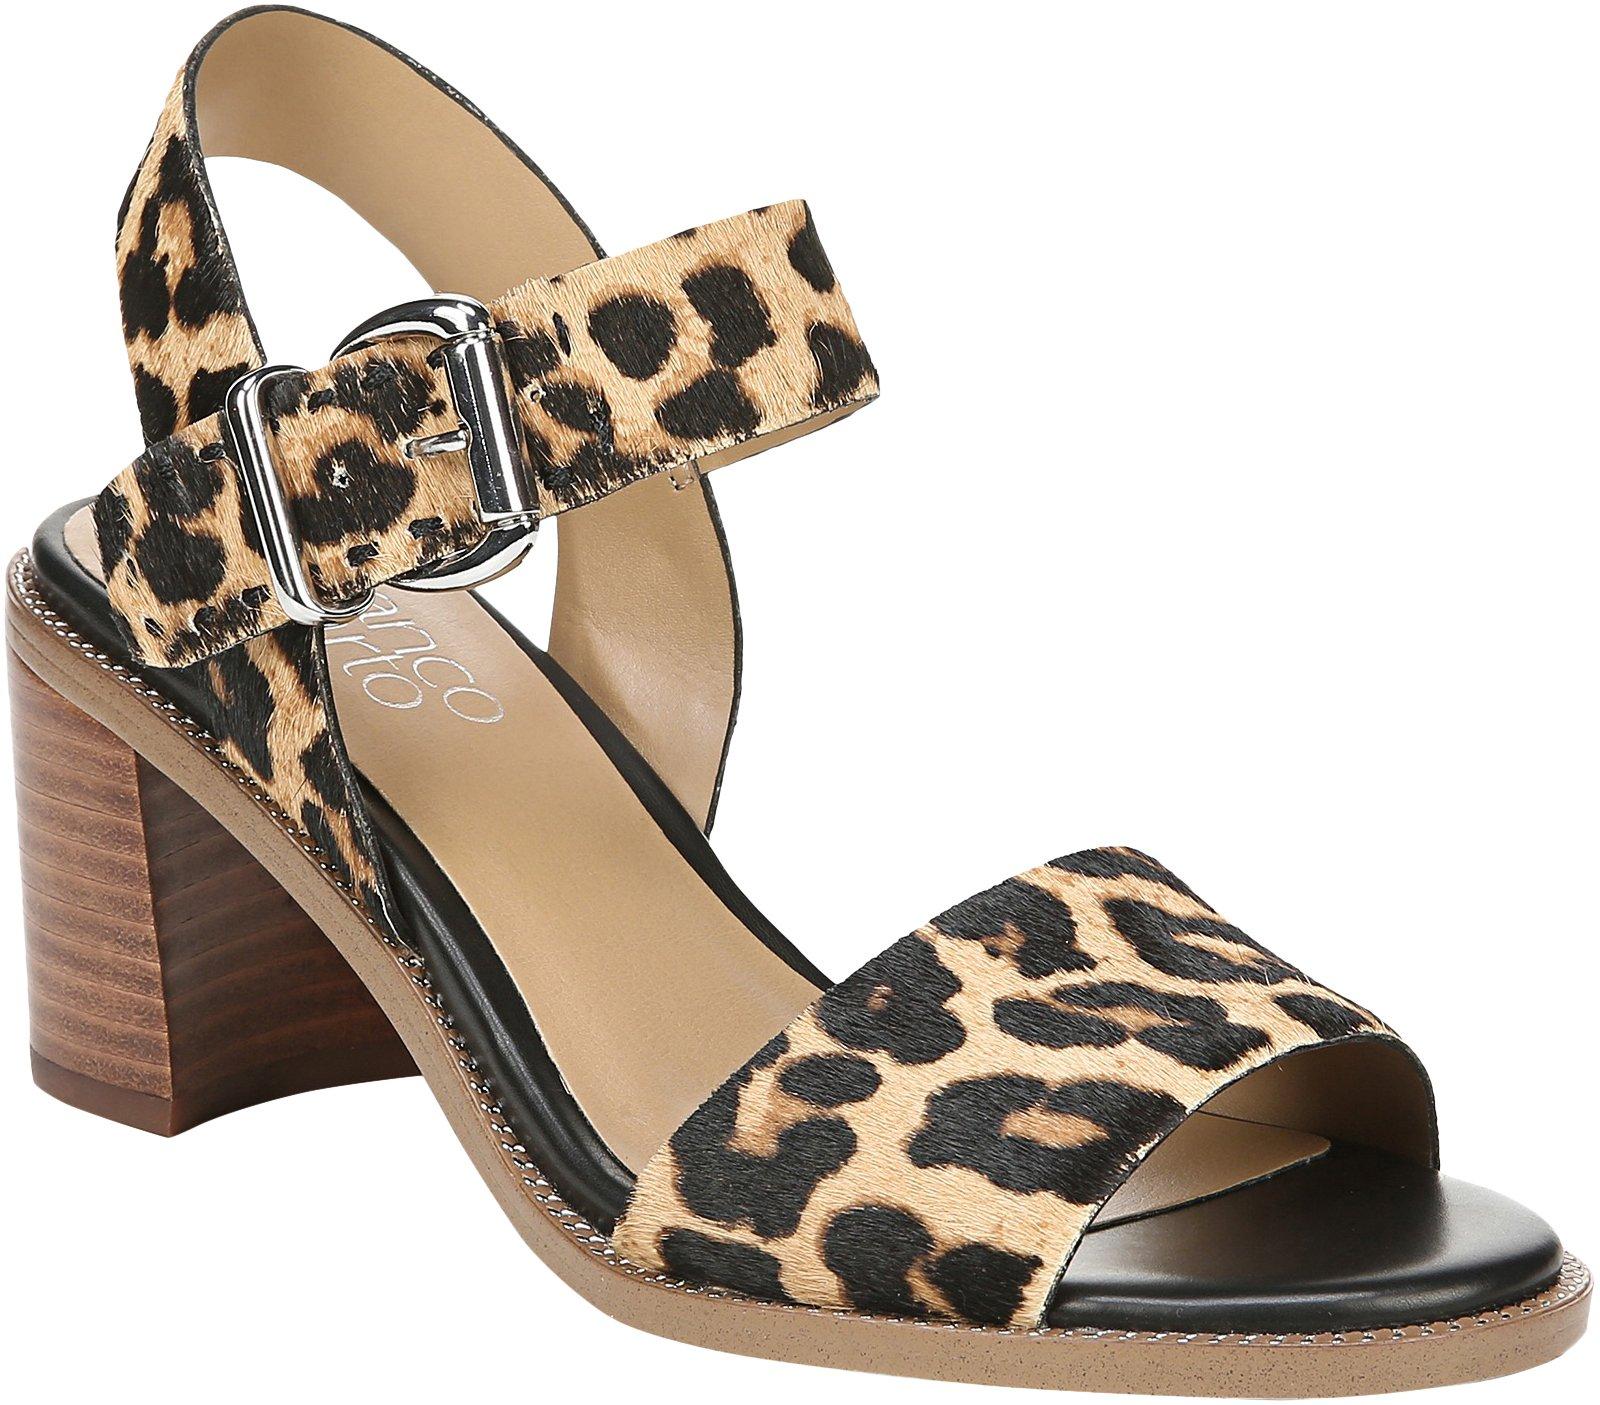 franco sarto leopard sandals